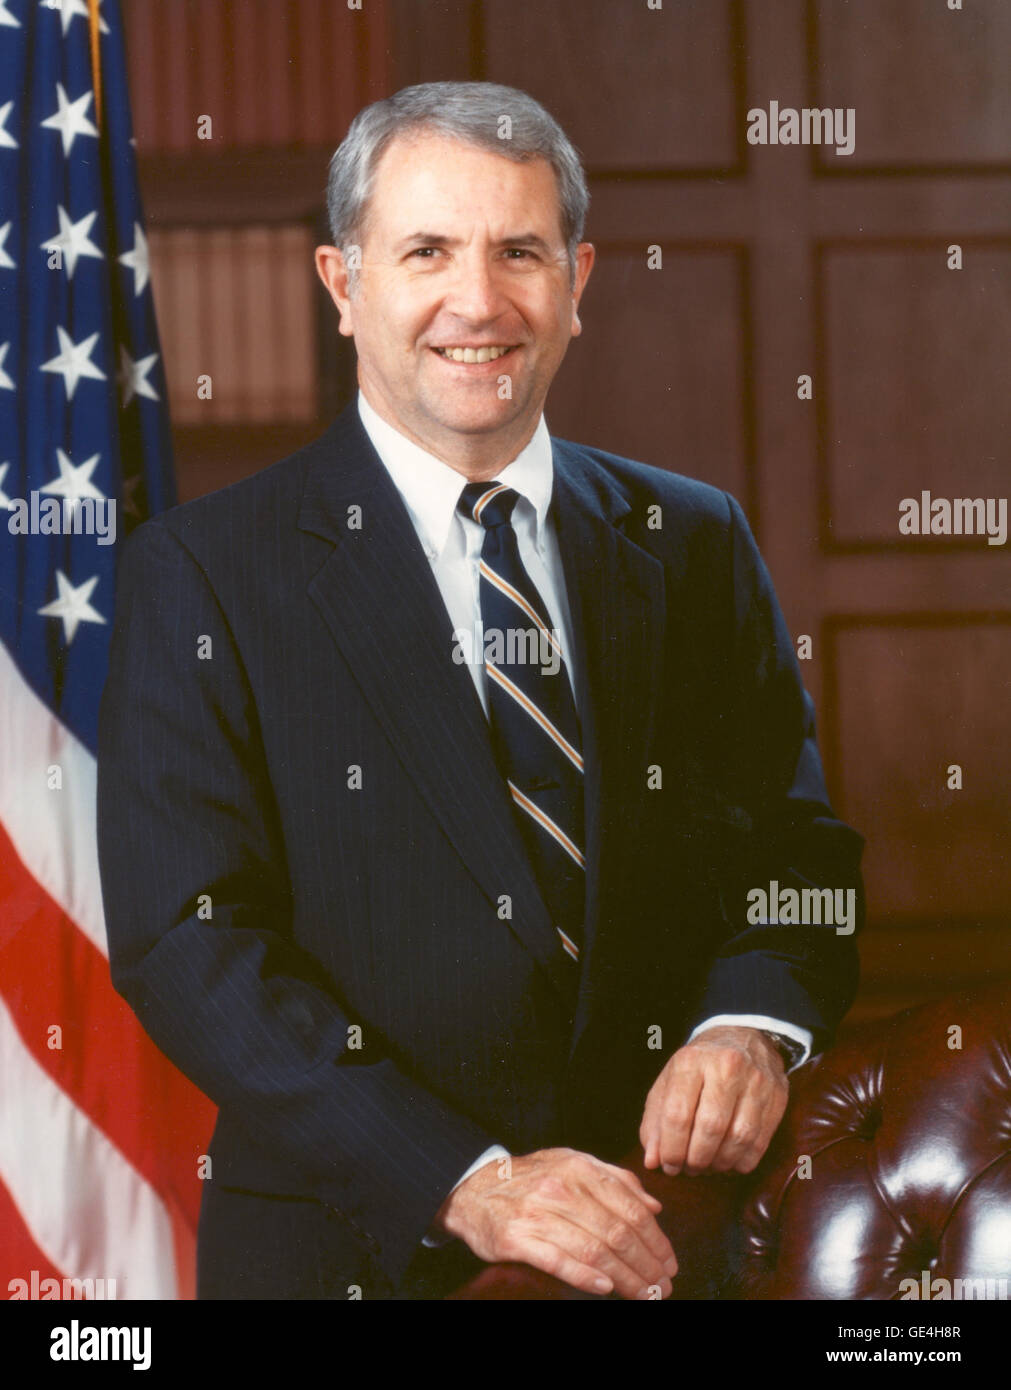 Vizeadmiral Richard H. wirklich amtierte achte Administrator der NASA vom 14. Mai 1989 bis 31. März 1992. Vor seiner Ernennung Administrator wirklich diente als Associate Administrator der NASA für die Raumfahrt. In dieser Position leitete er den mühsamen Wiederaufbau des Space-Shuttle-Programms nach dem Challenger-Unglück. Wirklich hat Karriere begann in der Marine; 1965 wurde er einer der ersten militärischen Astronauten ausgewählt, um die Luftwaffe Manned Orbiting Laboratory Program in Los Angeles, Kalifornien. Wechselte er zur NASA als Astronaut im August 1969 dann als Capsule Communicator für alle drei diente Stockfoto